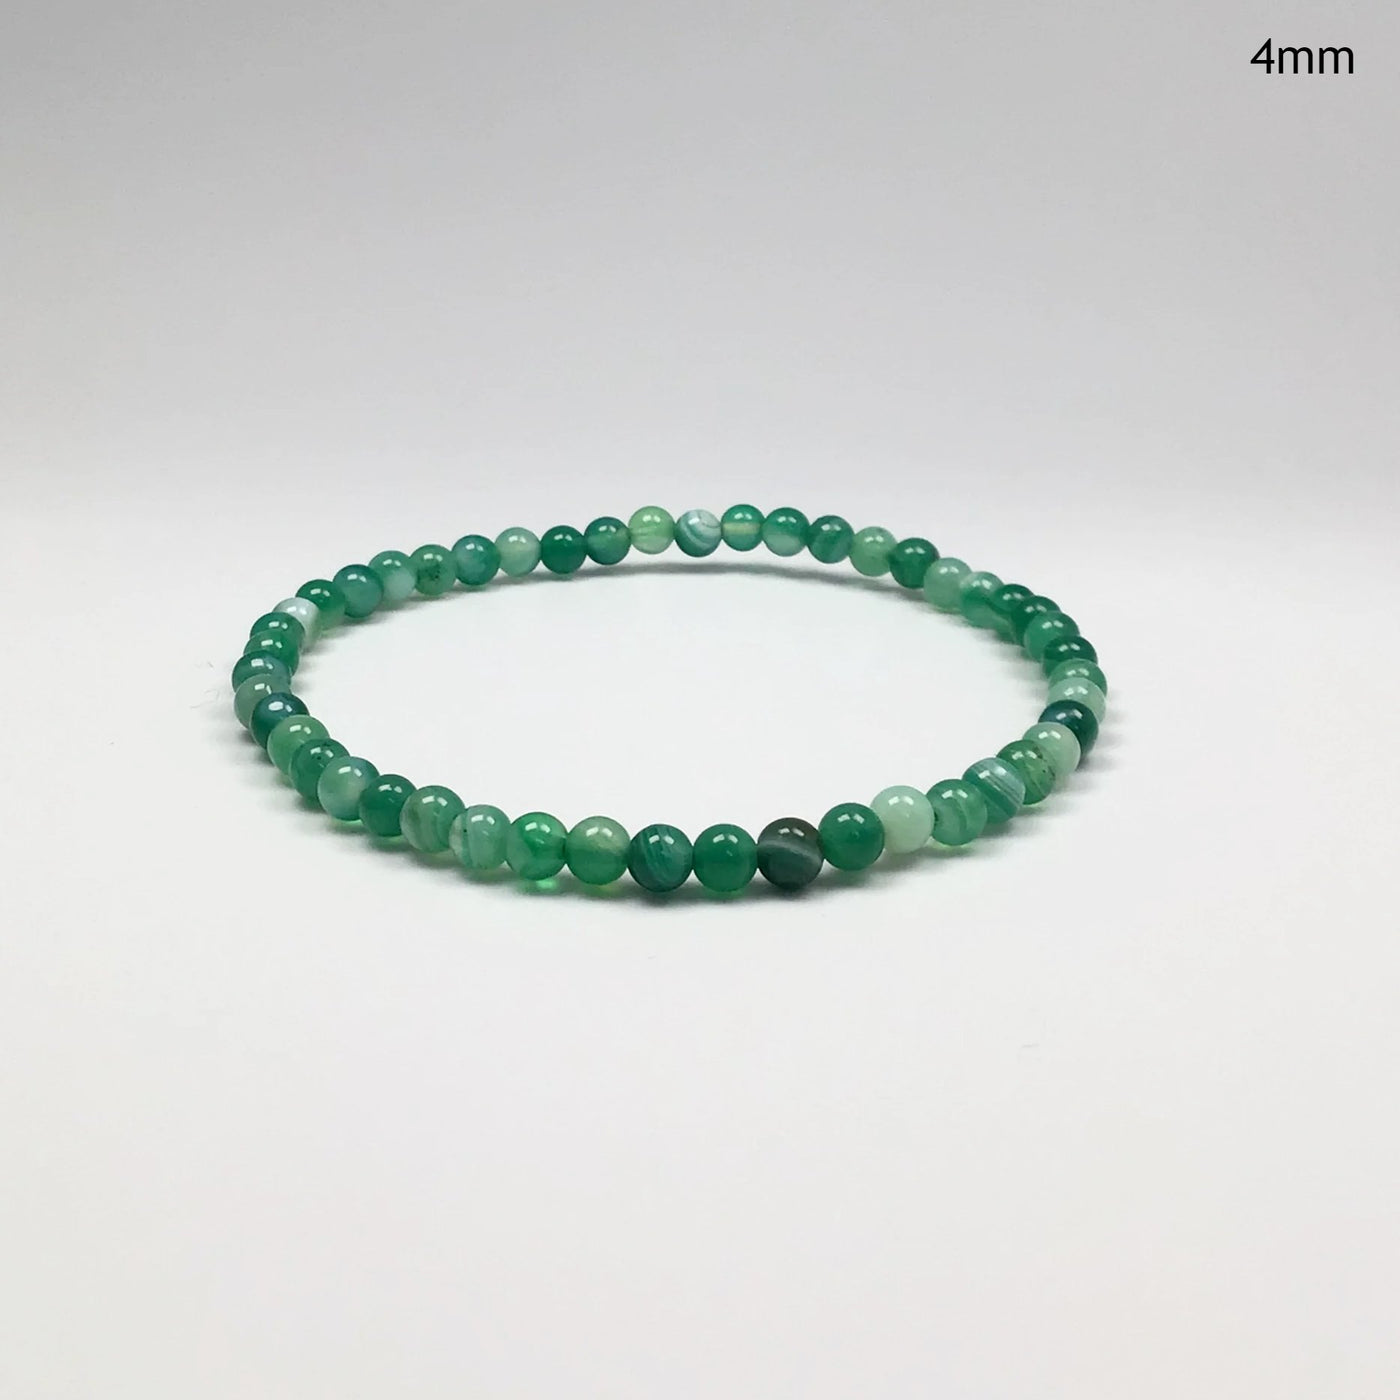 Banded Green Agate Beaded Bracelet